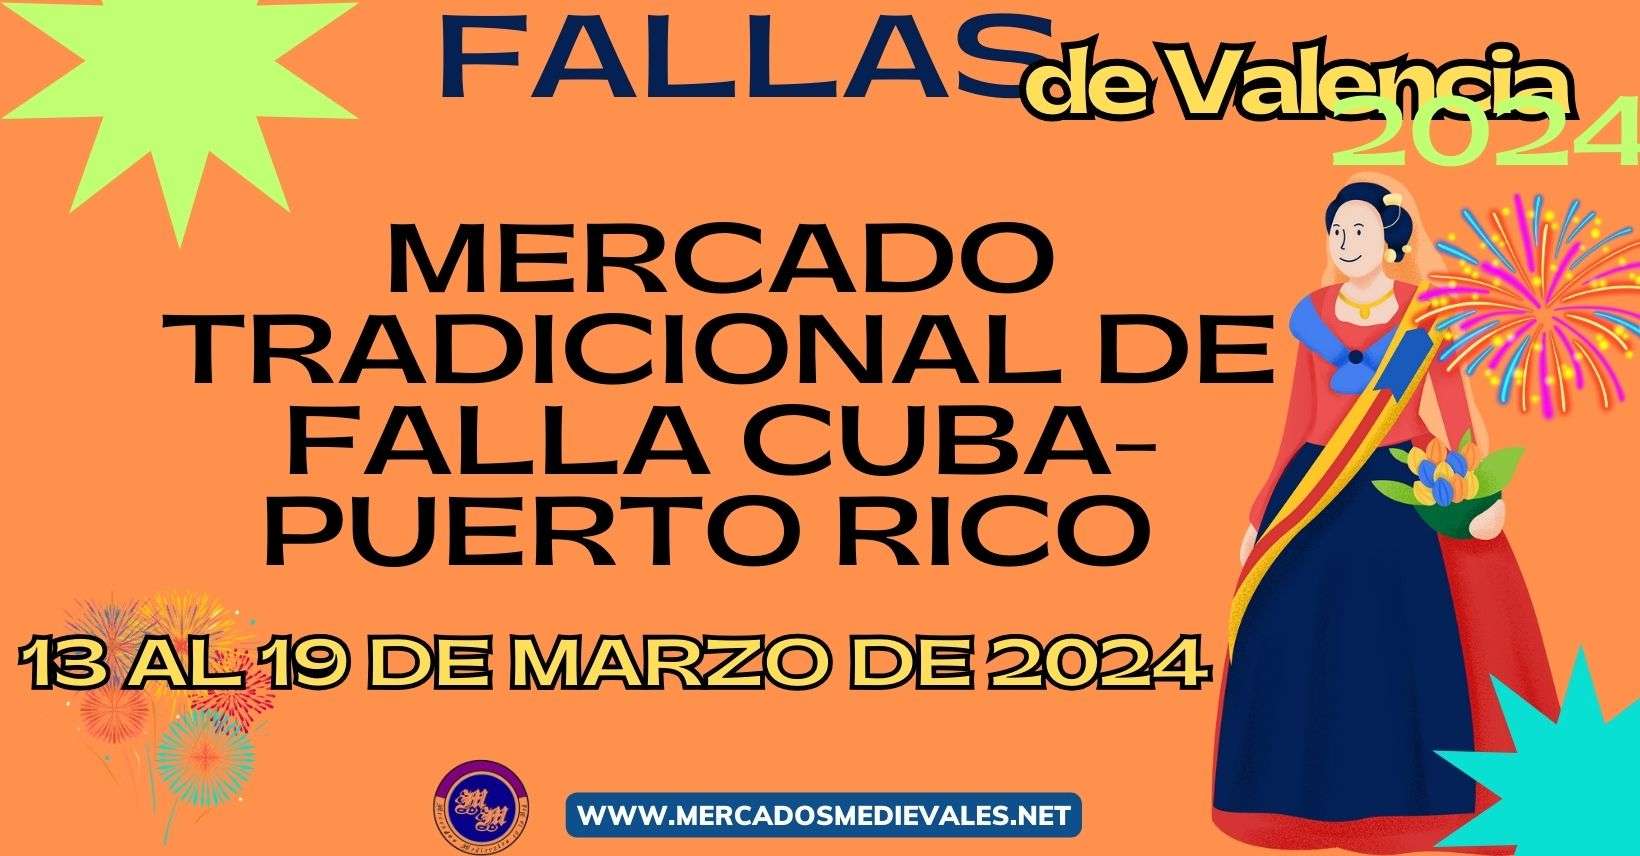 MERCADO TRADICIONAL DE FALLA CUBA - PUERTO RICO 2024